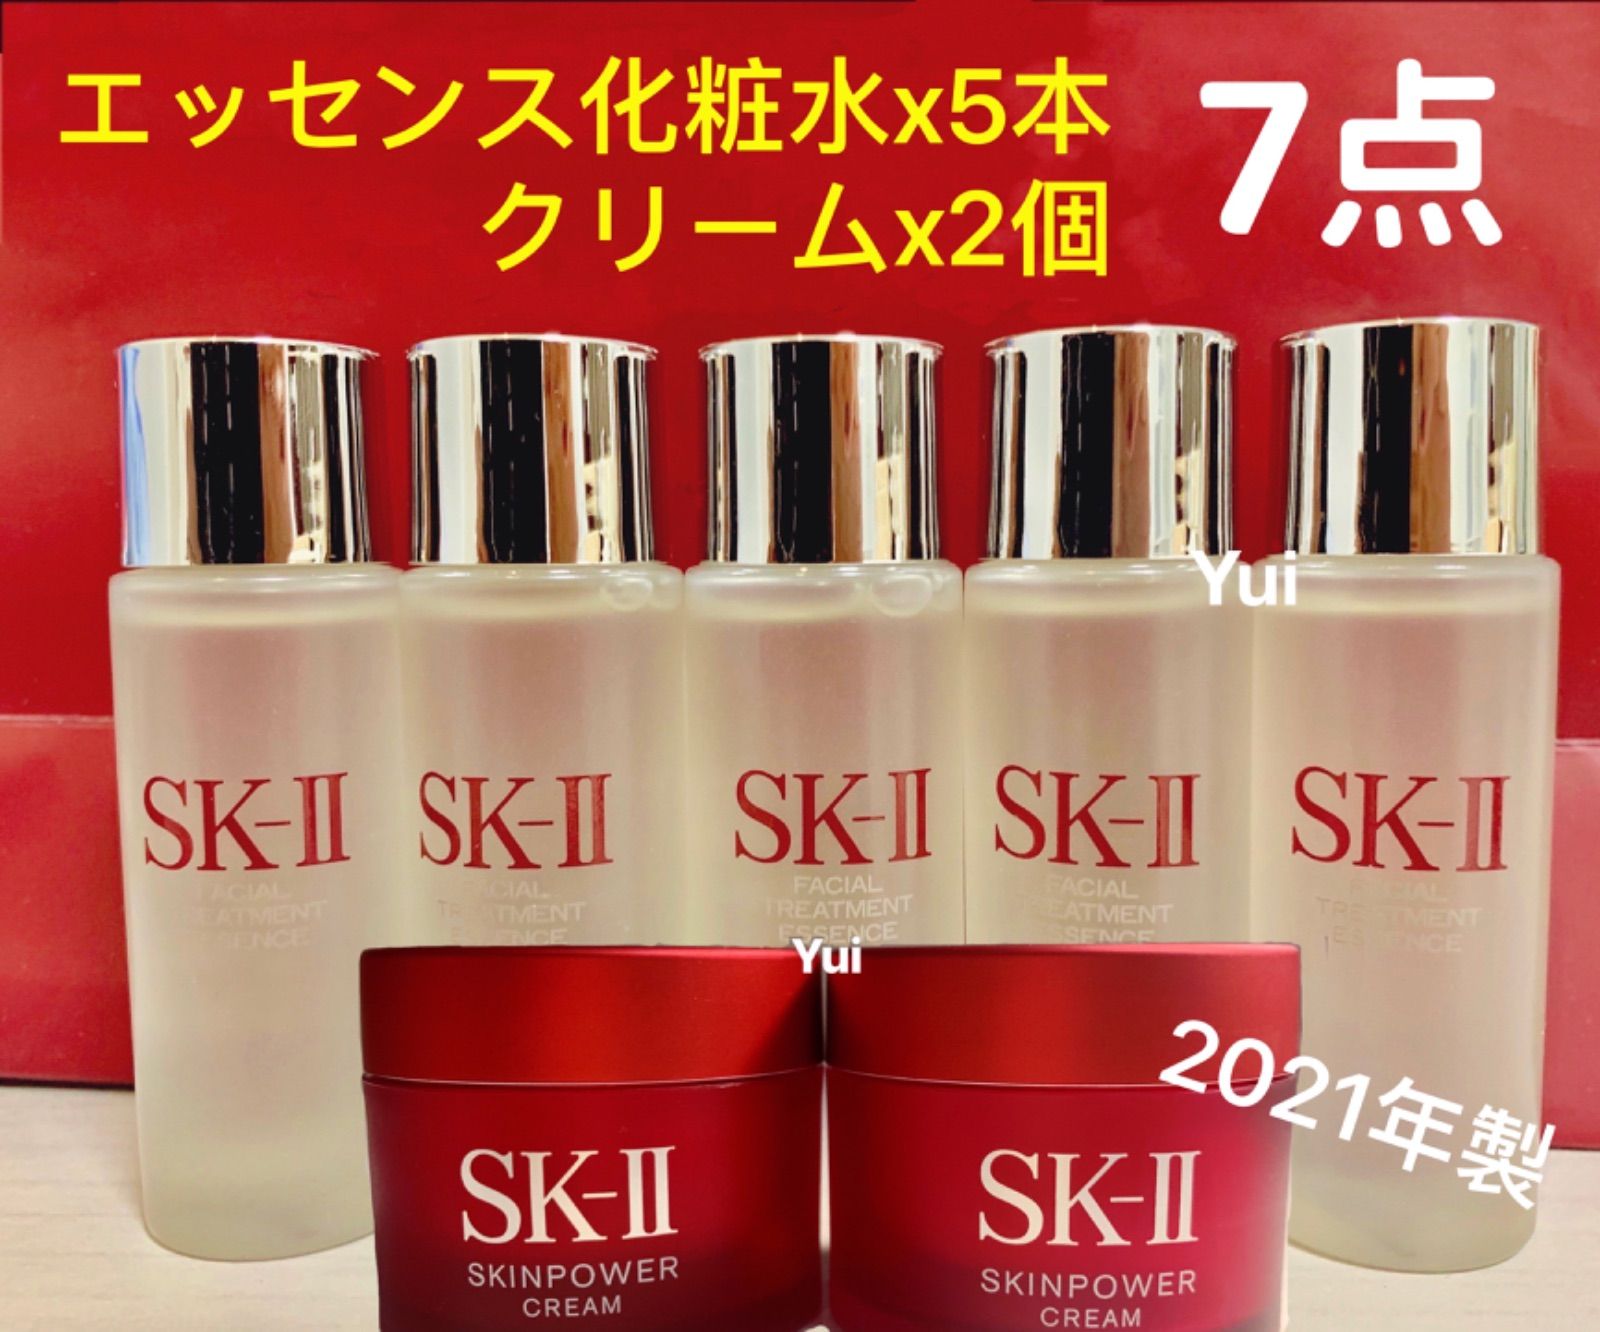 SK-II エスケーツー エッセンス クリーム5点セット 化粧水 スキンパワー 通販